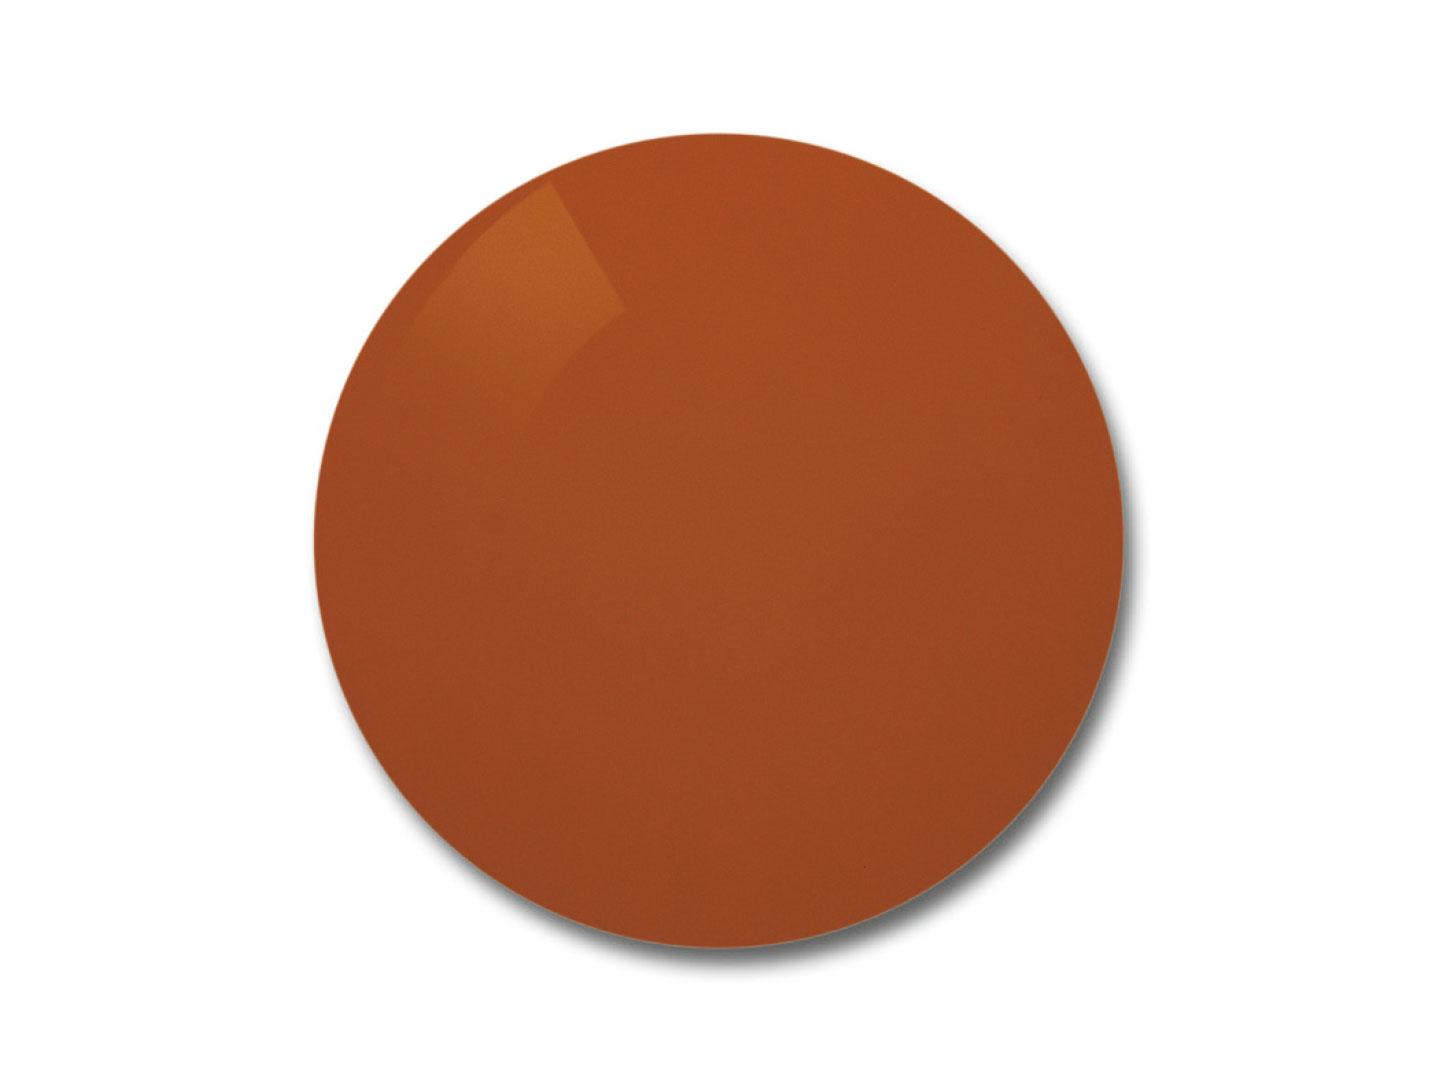 Illustration af ZEISS Skylet® Fun-brilleglas med orange-brun farve